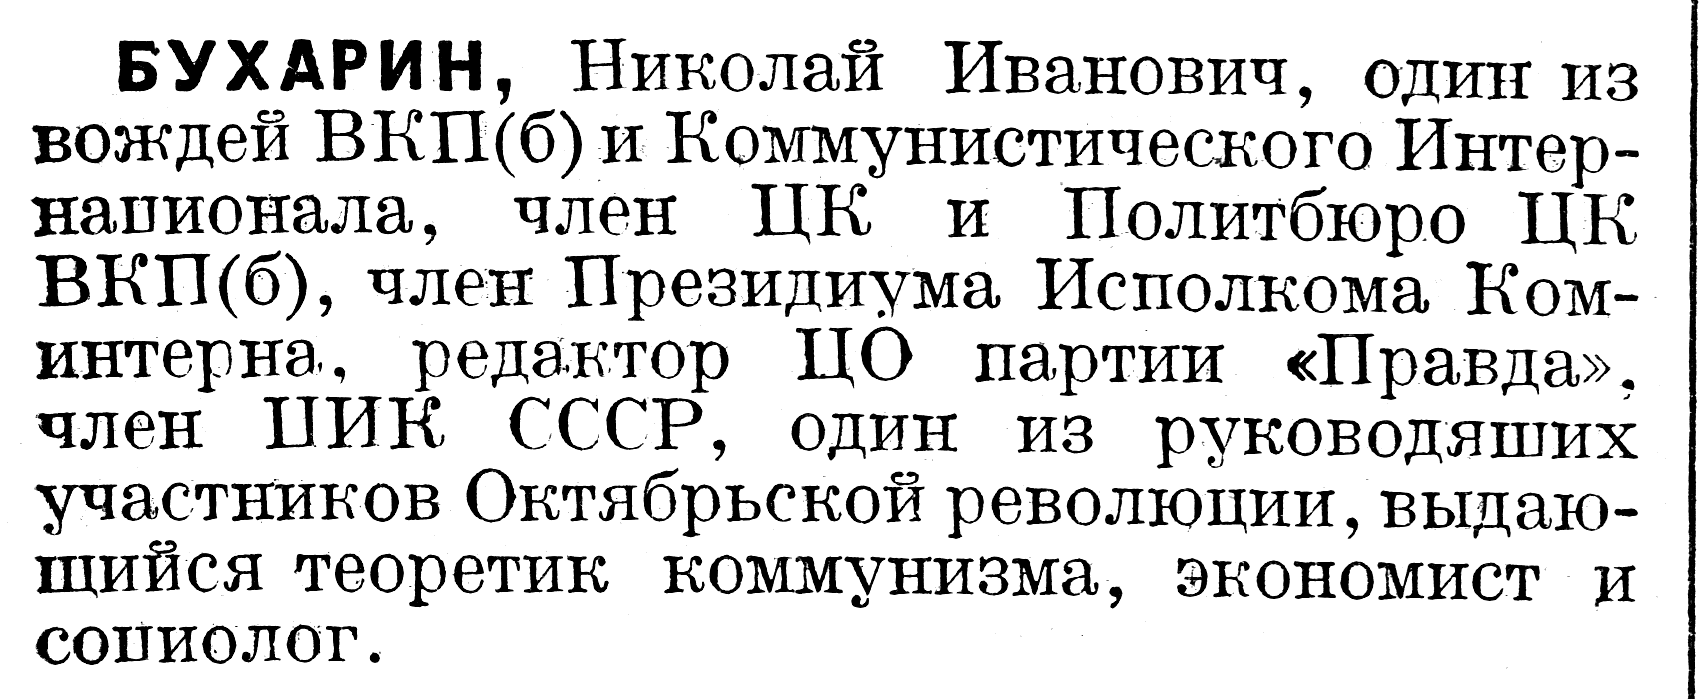 Файл:1927-Bukharin-t8-stlb271-284.png — Википедия